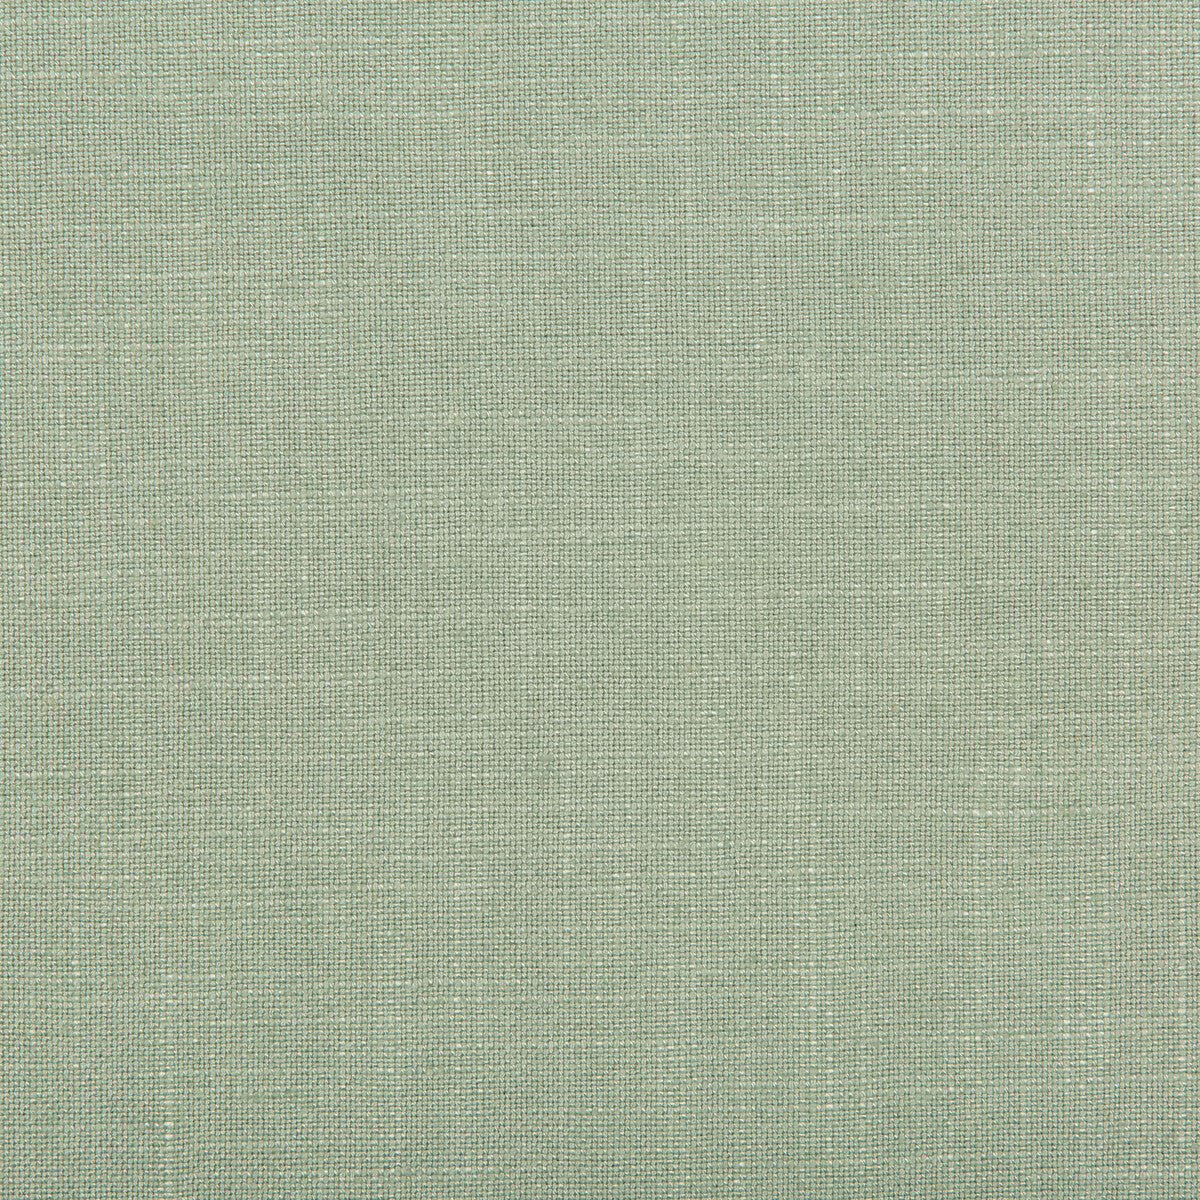 Aura fabric in glacier color - pattern 35520.123.0 - by Kravet Design